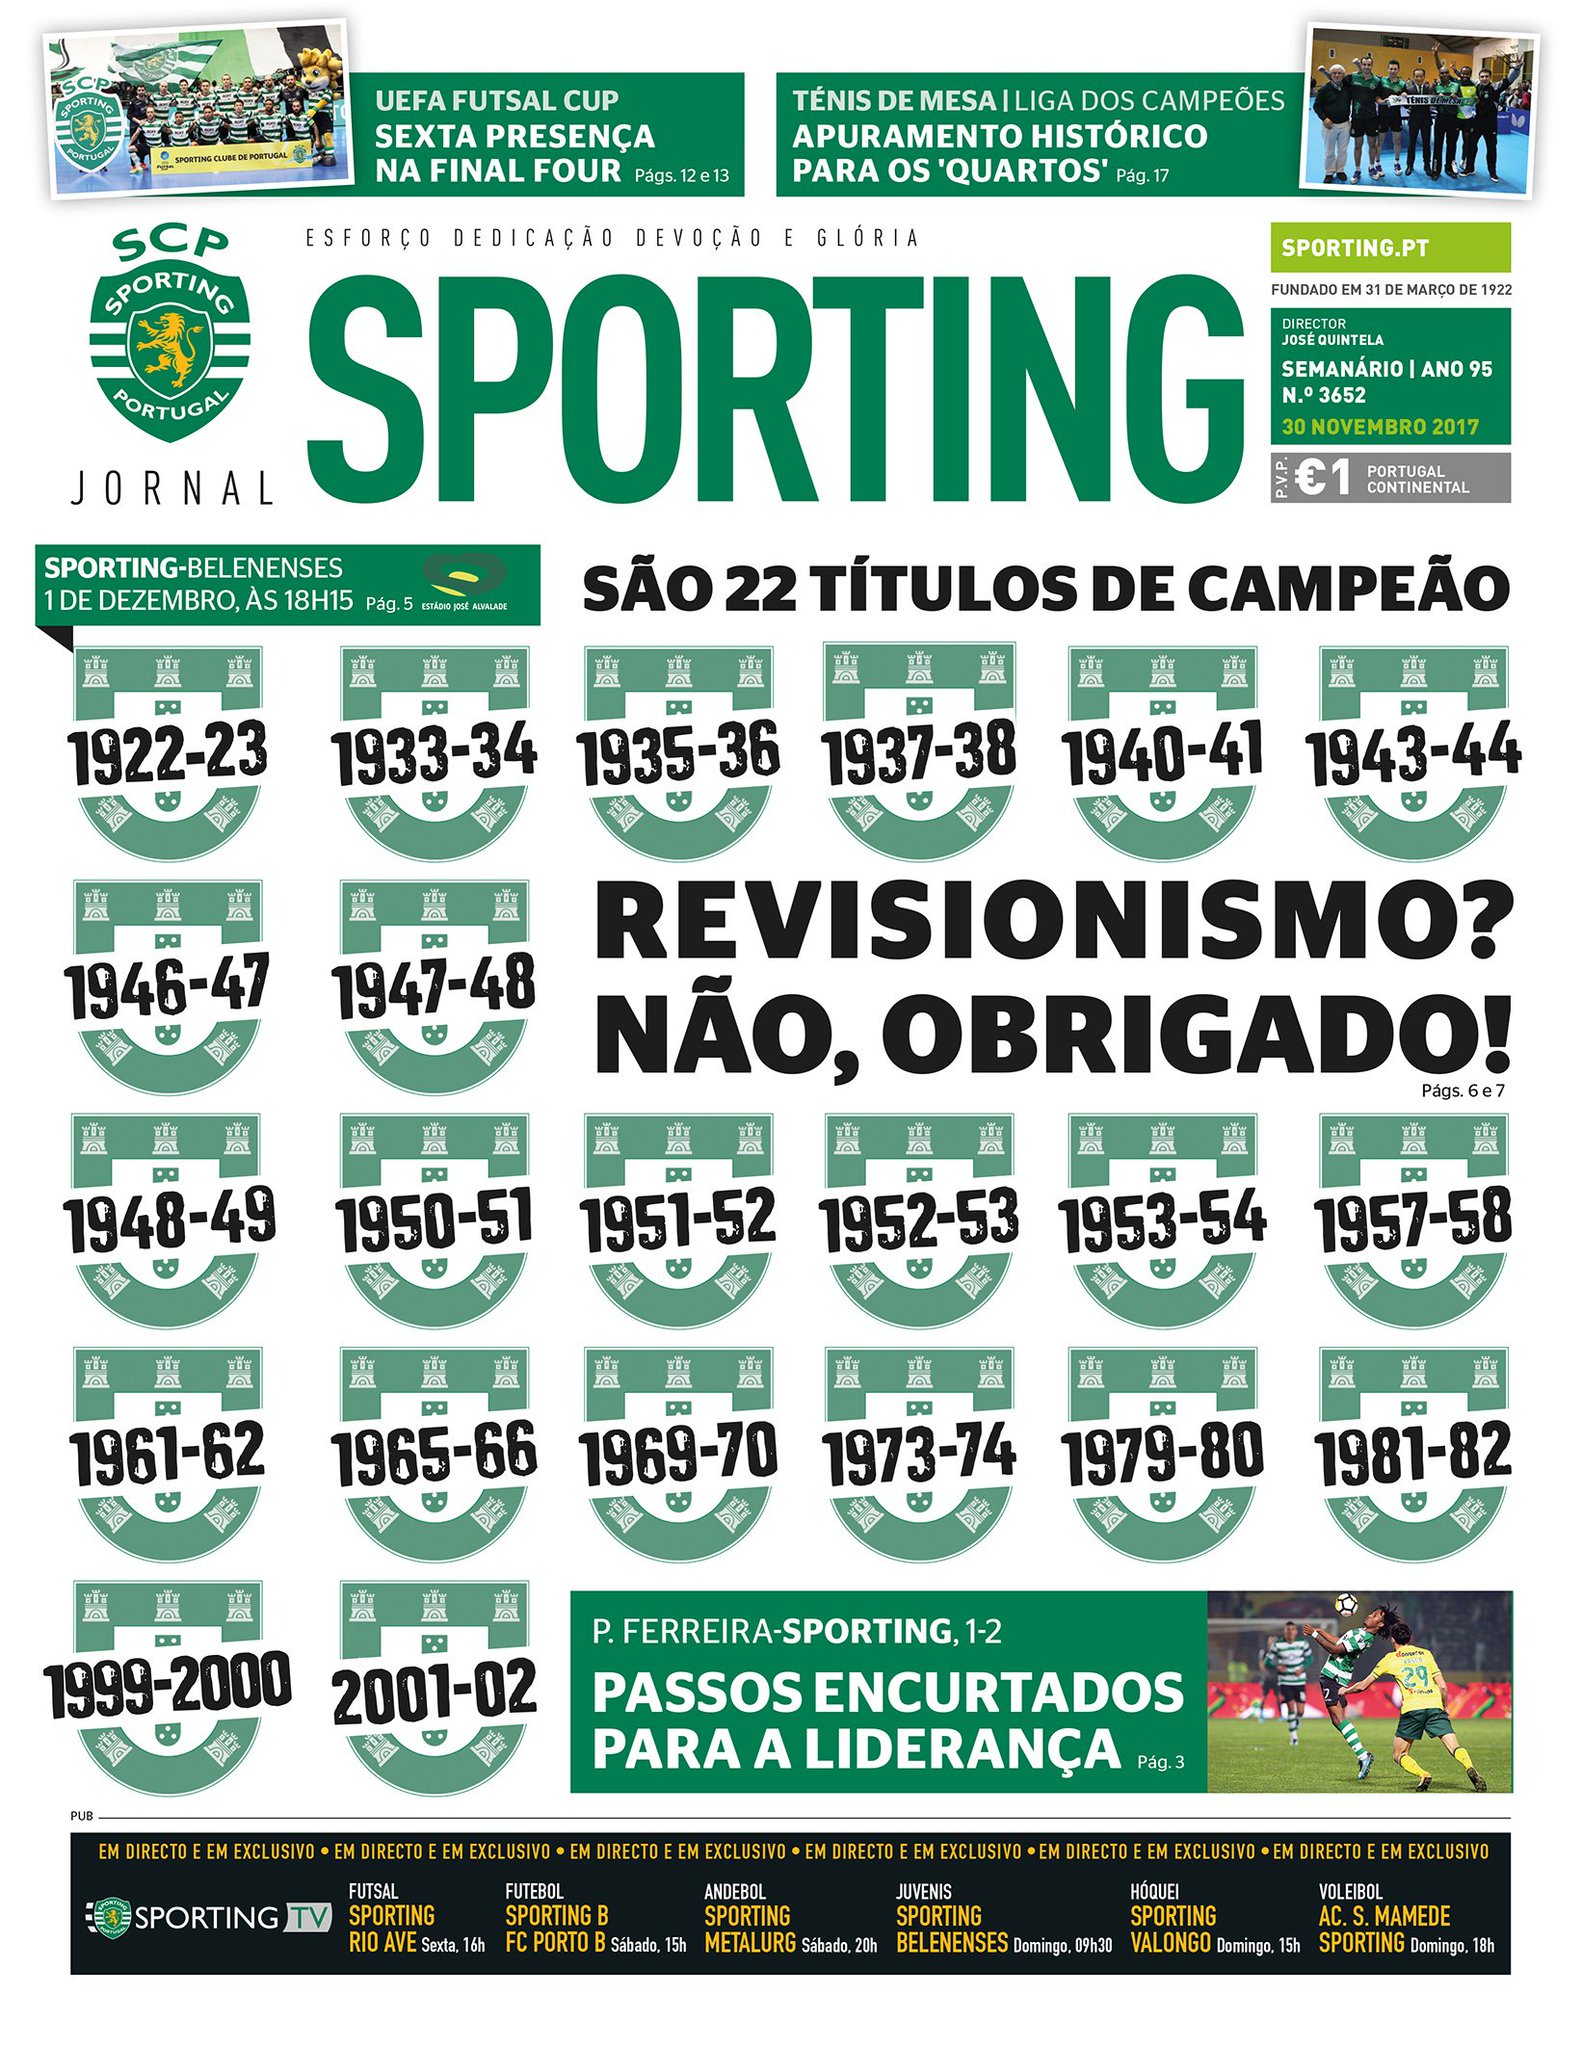 Quantos títulos tem Sporting de Portugal?